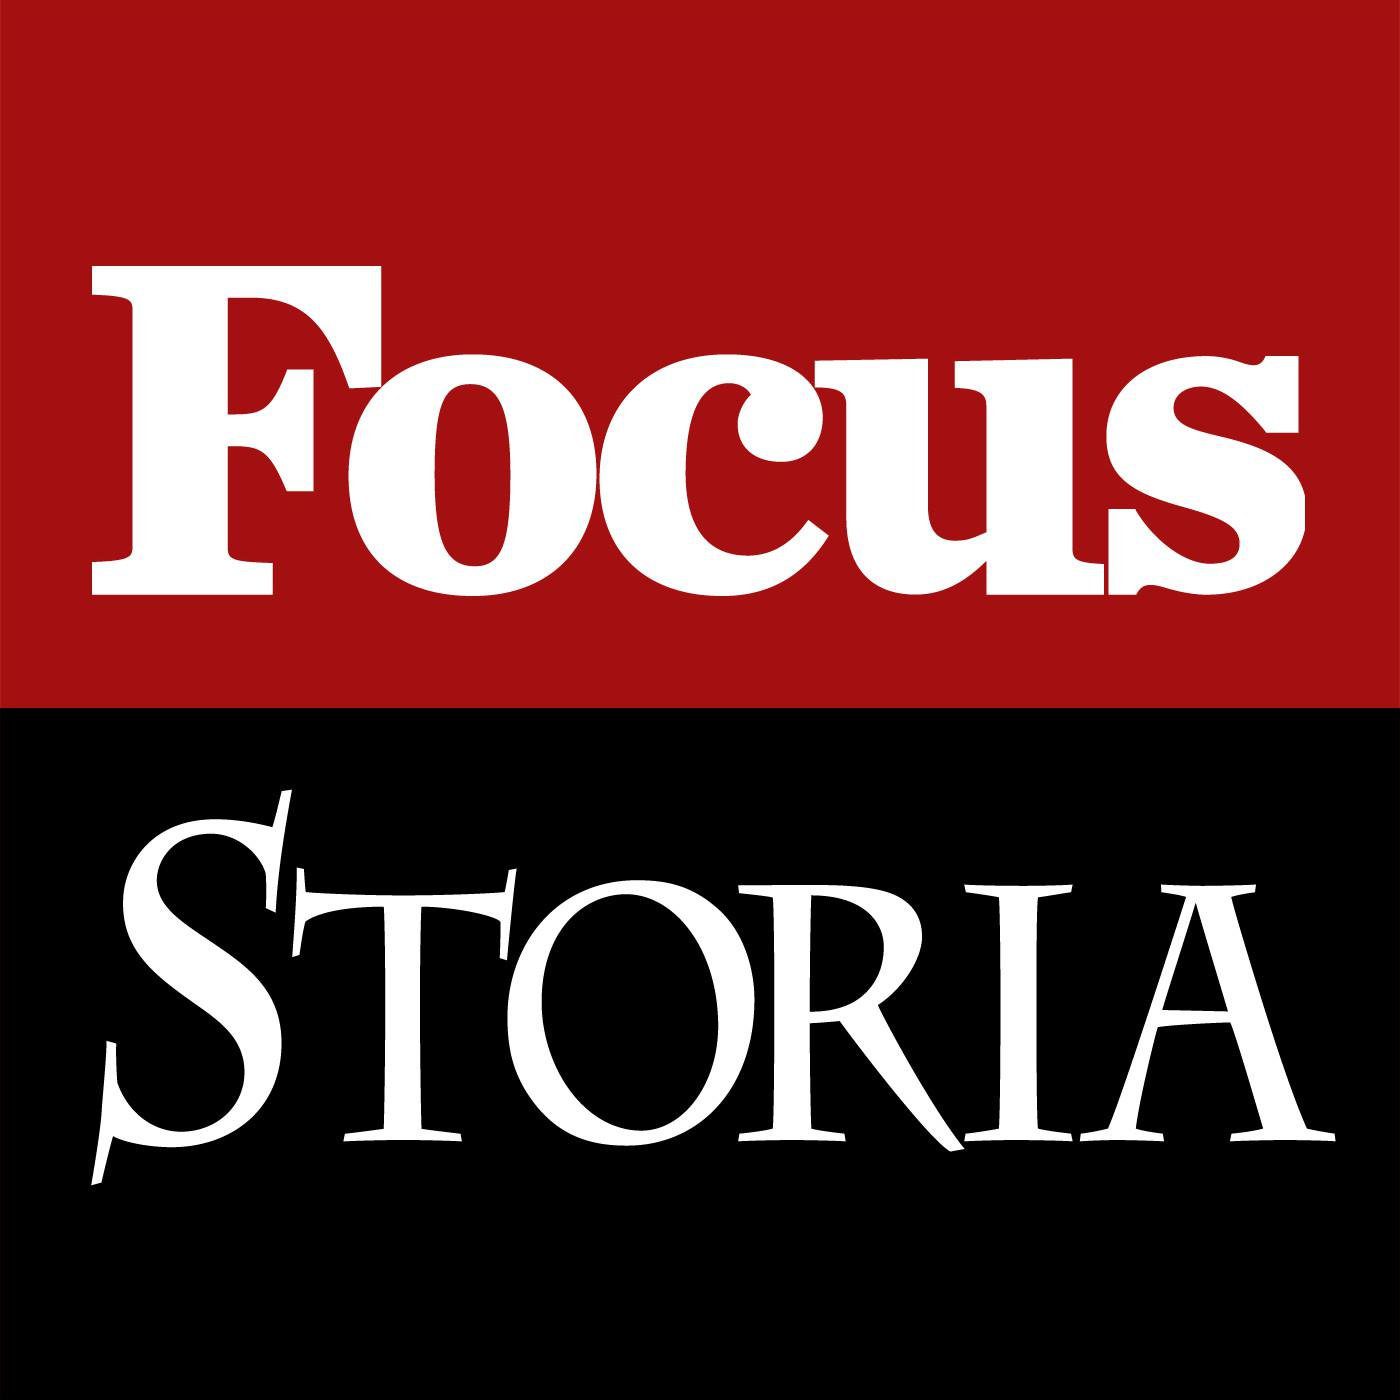  Il podcast di Focus storia